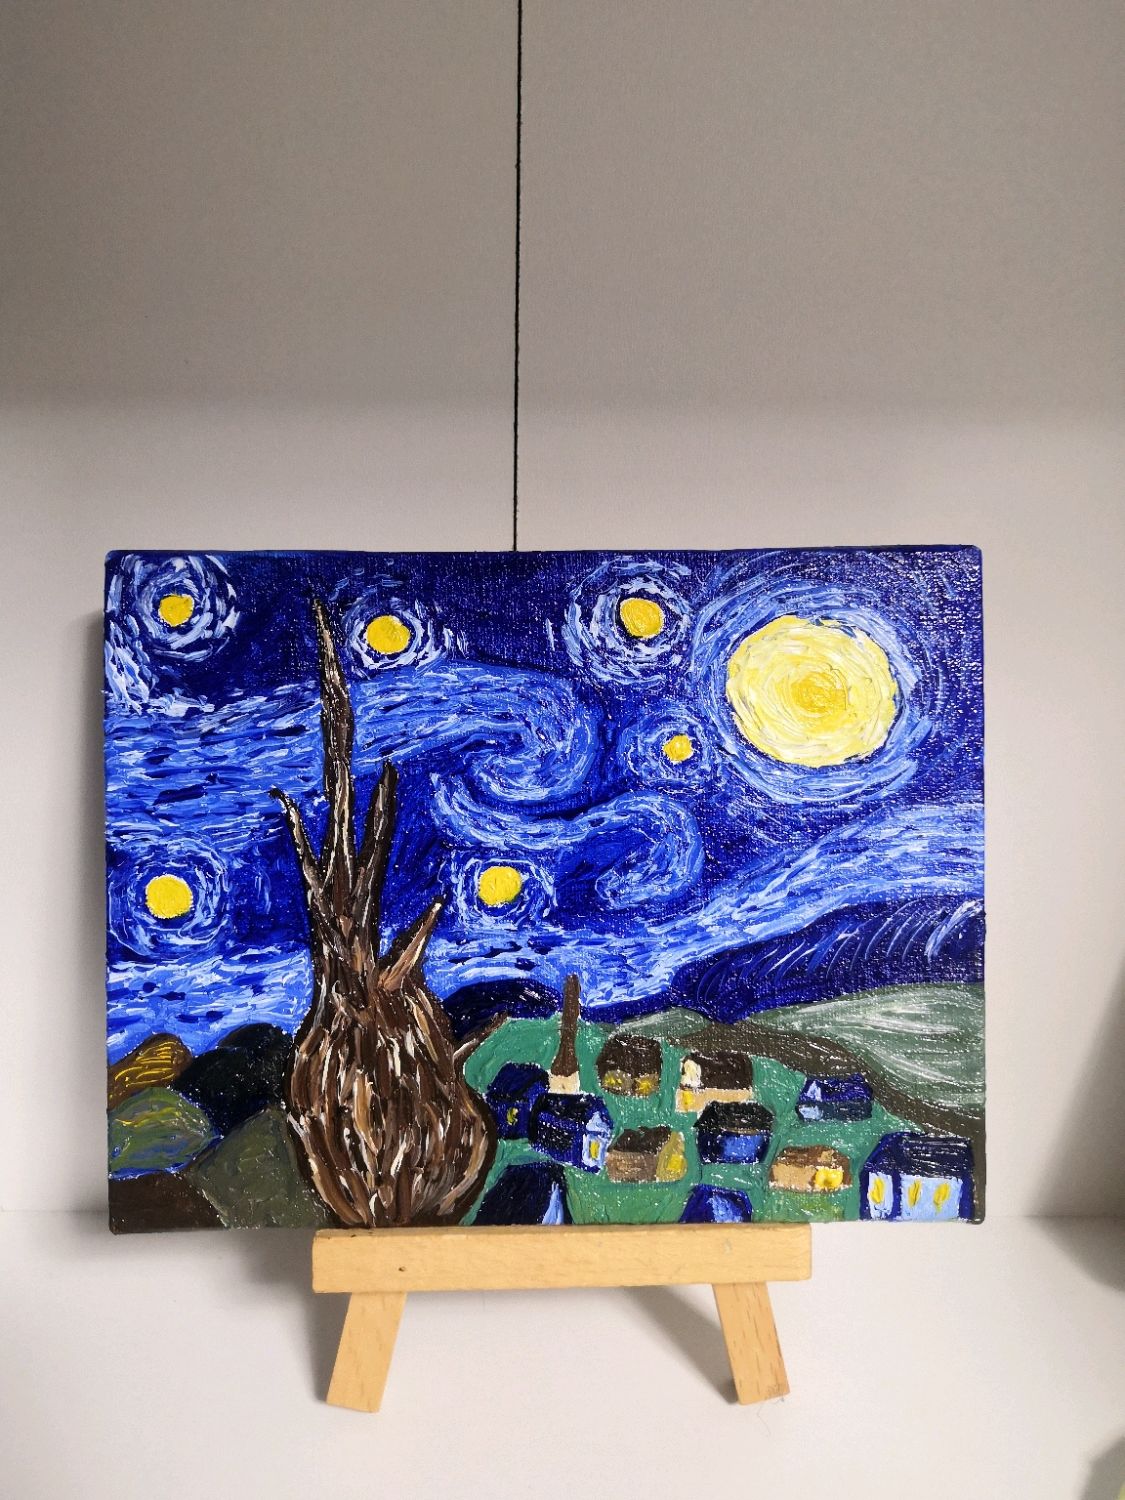 Миниатюра картины Звёздная ночь Ван Гога купить в интернет-магазине Ярмарка  Мастеров по цене 500 ₽ – Q6KPERU | Картины, Новомосковск - доставка по  России